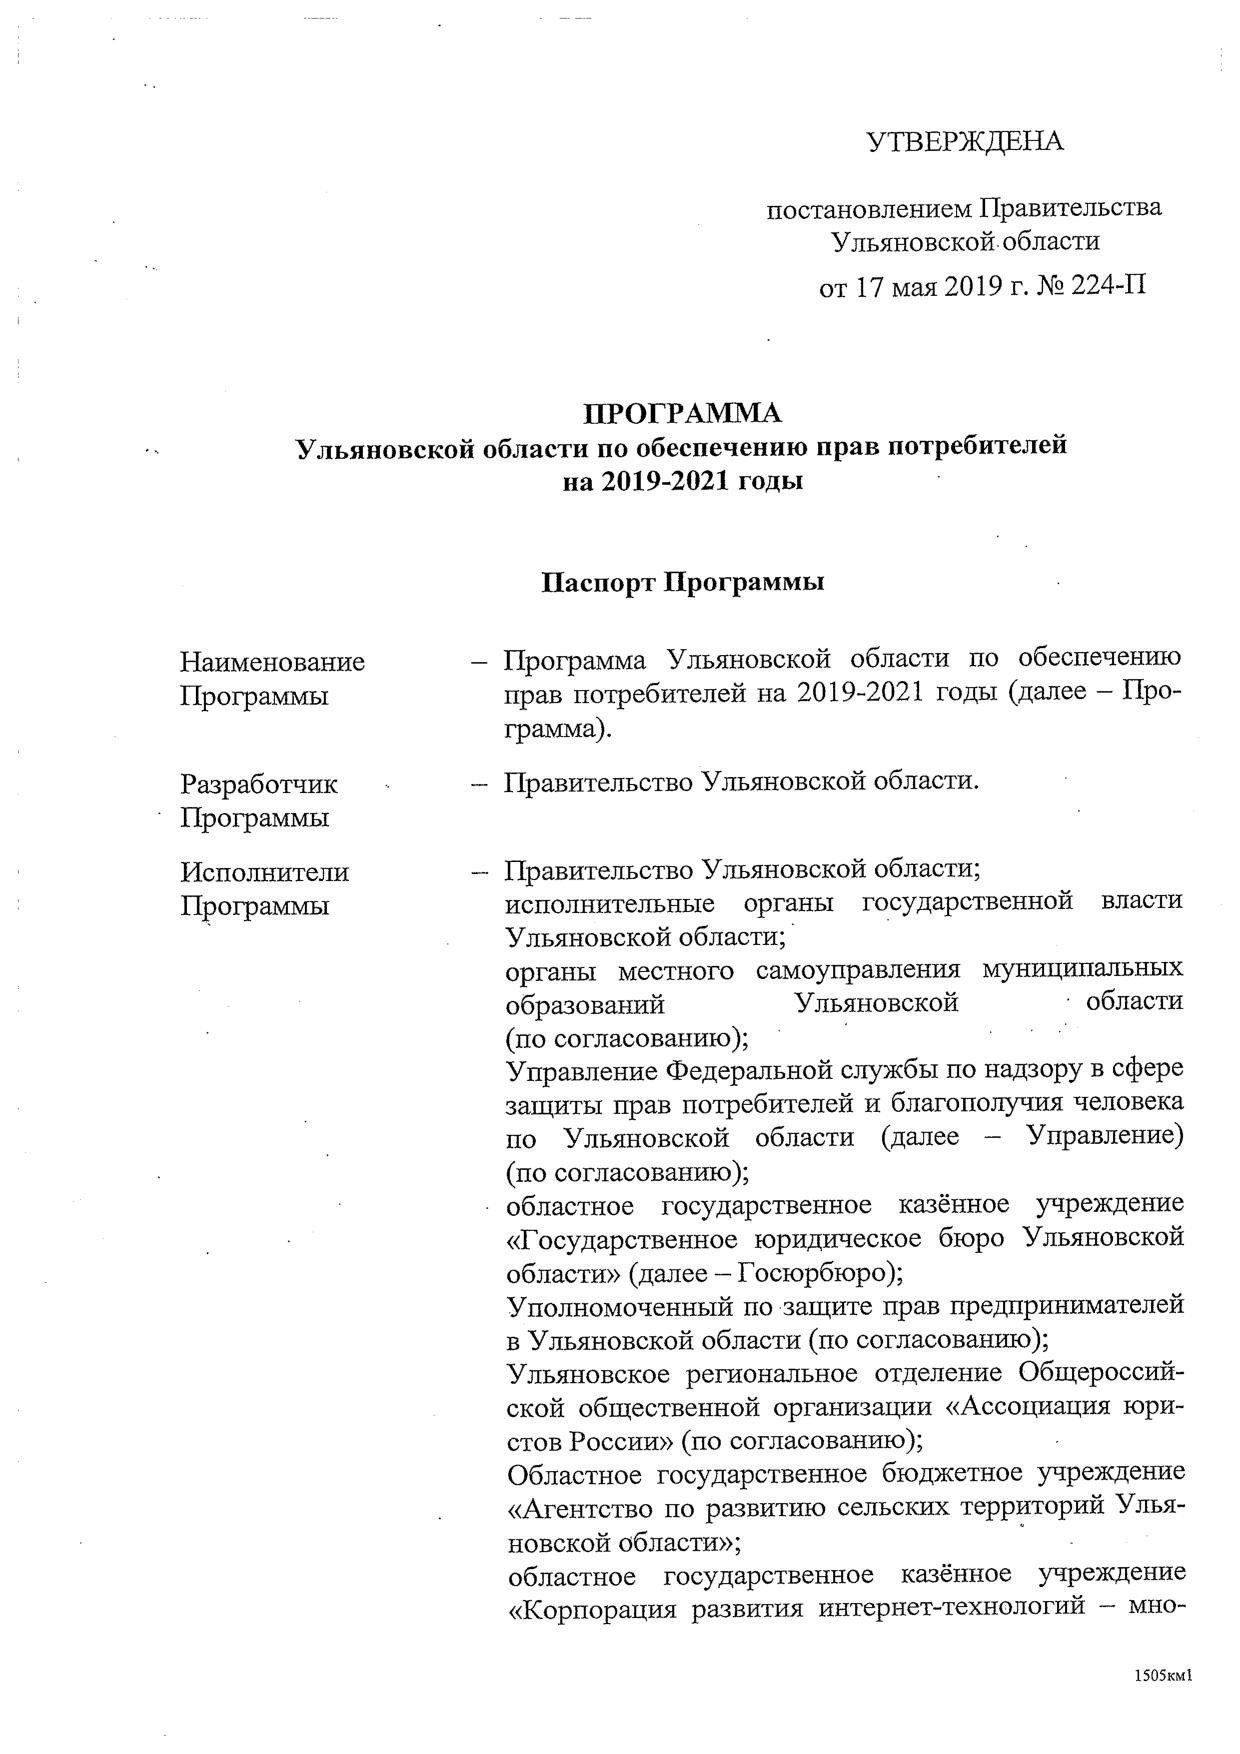 Программа Ульяновской области по обеспечению прав потребителей на 2019-2021 годы